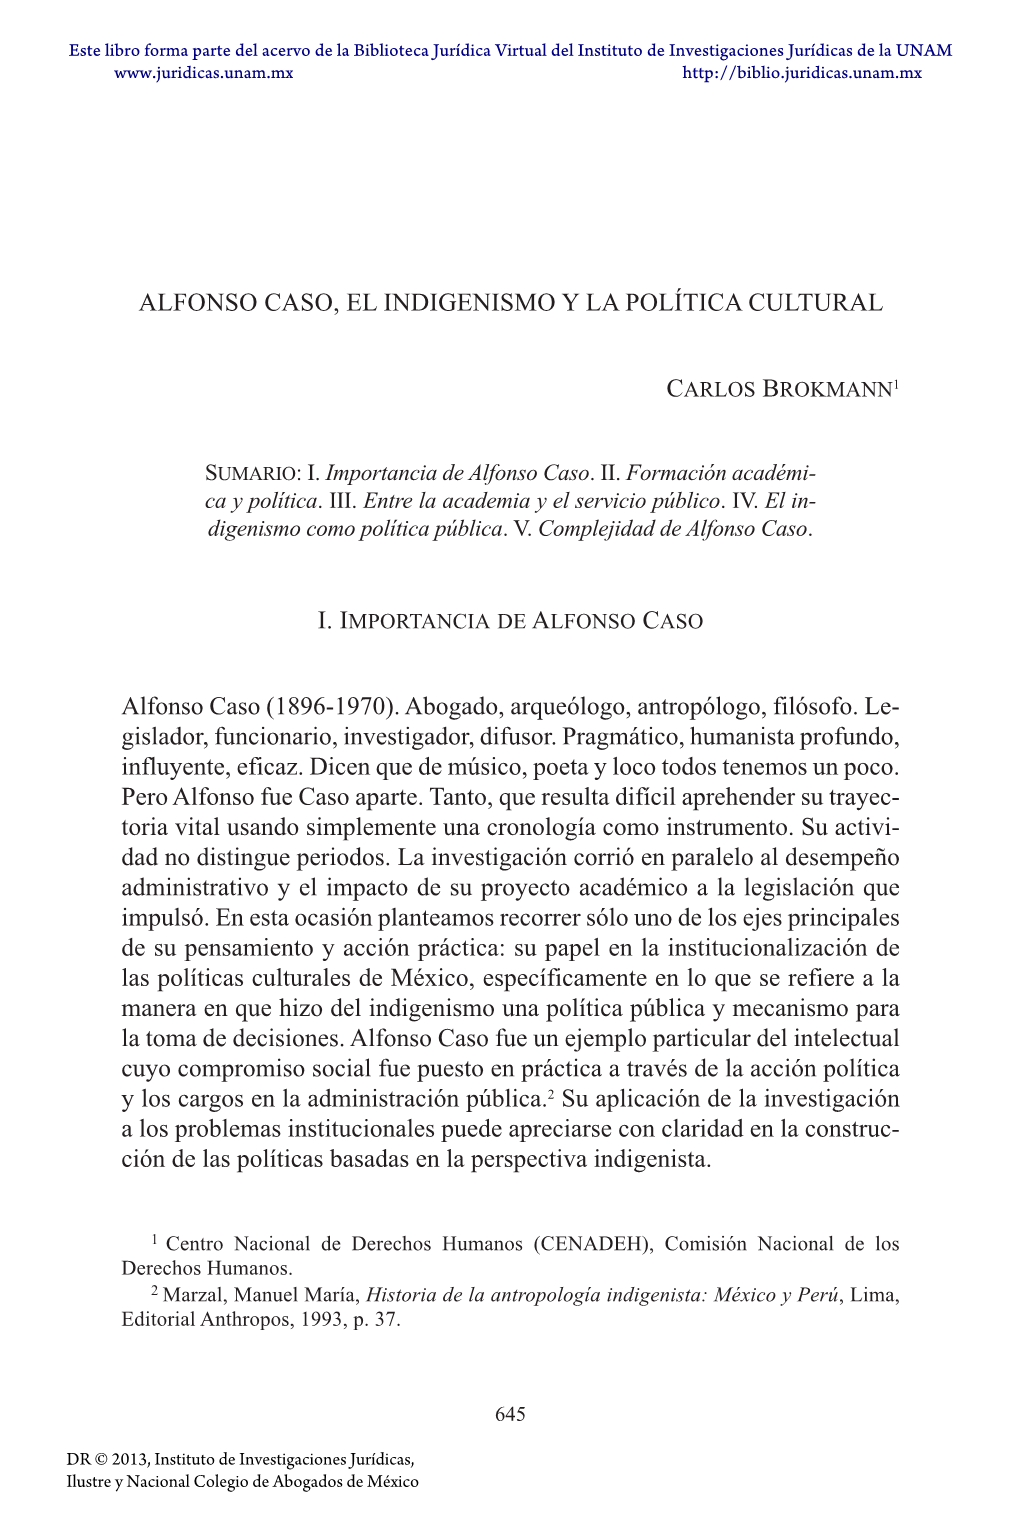 Alfonso Caso, El Indigenismo Y La Política Cultural